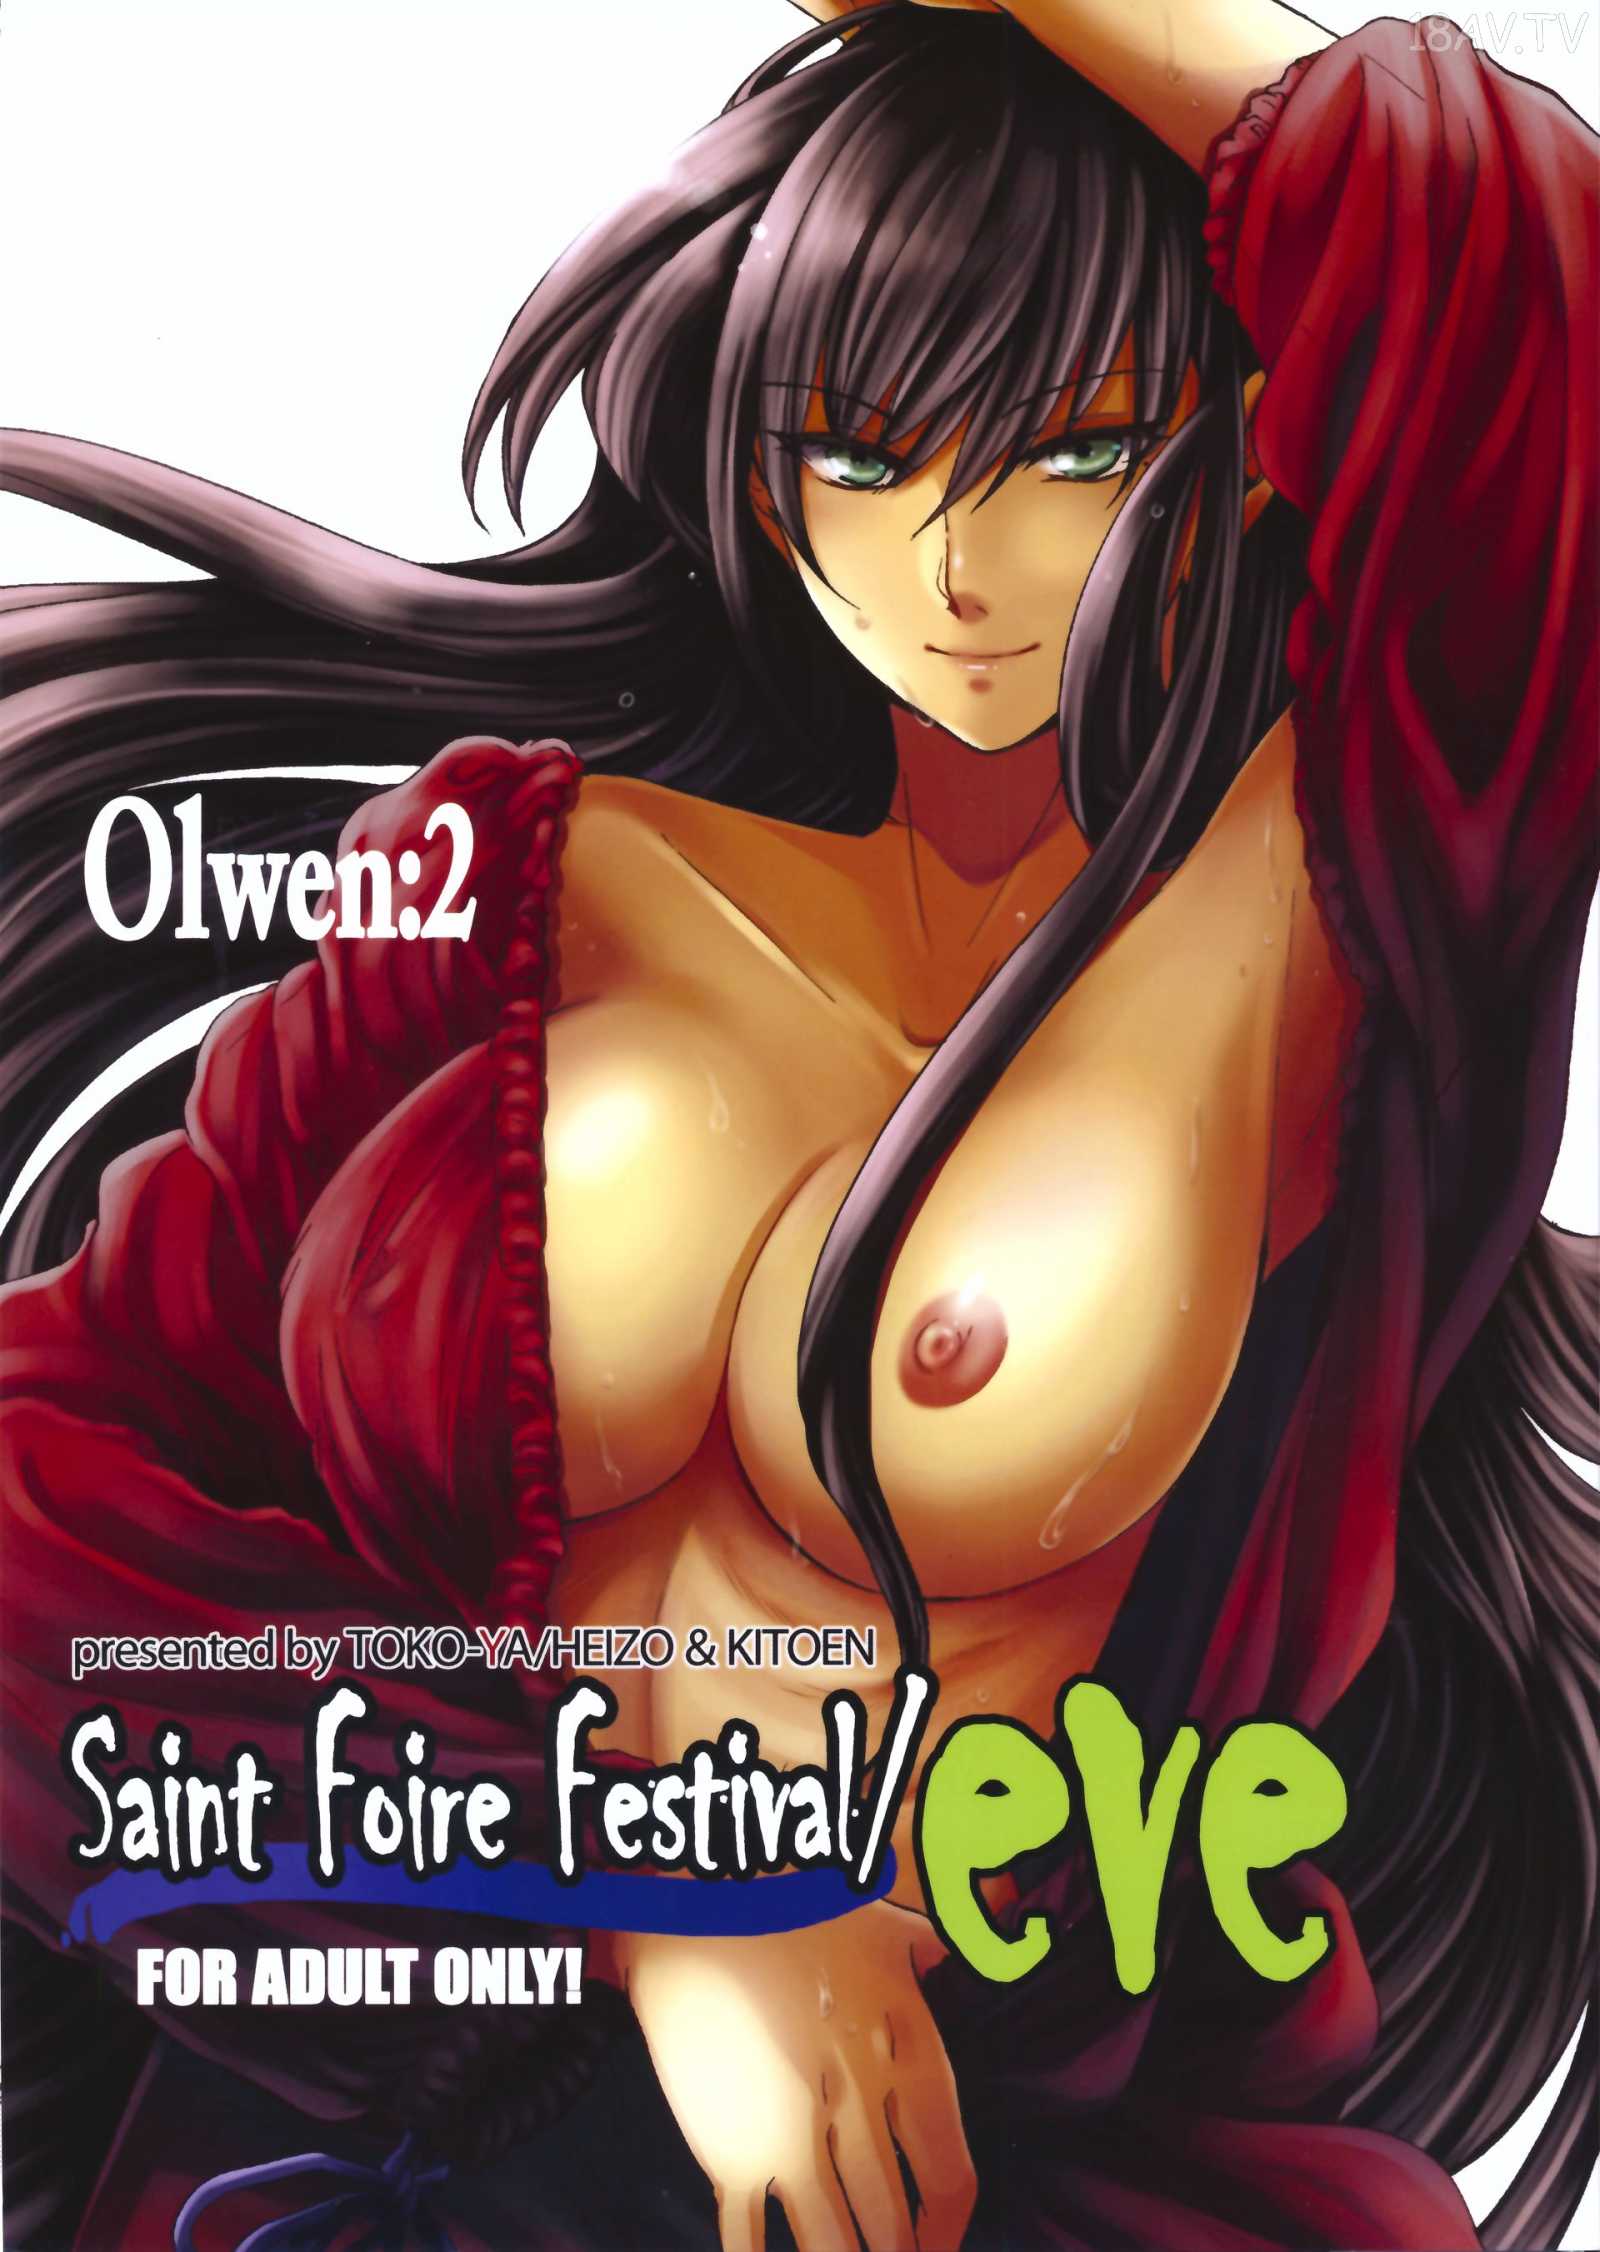 [在线本子(Full)][床子屋 (HEIZO、鬼头えん)] Saint Foire Festival／eve Olwen：2 [蛋铁个人汉化] [35p]在线观看